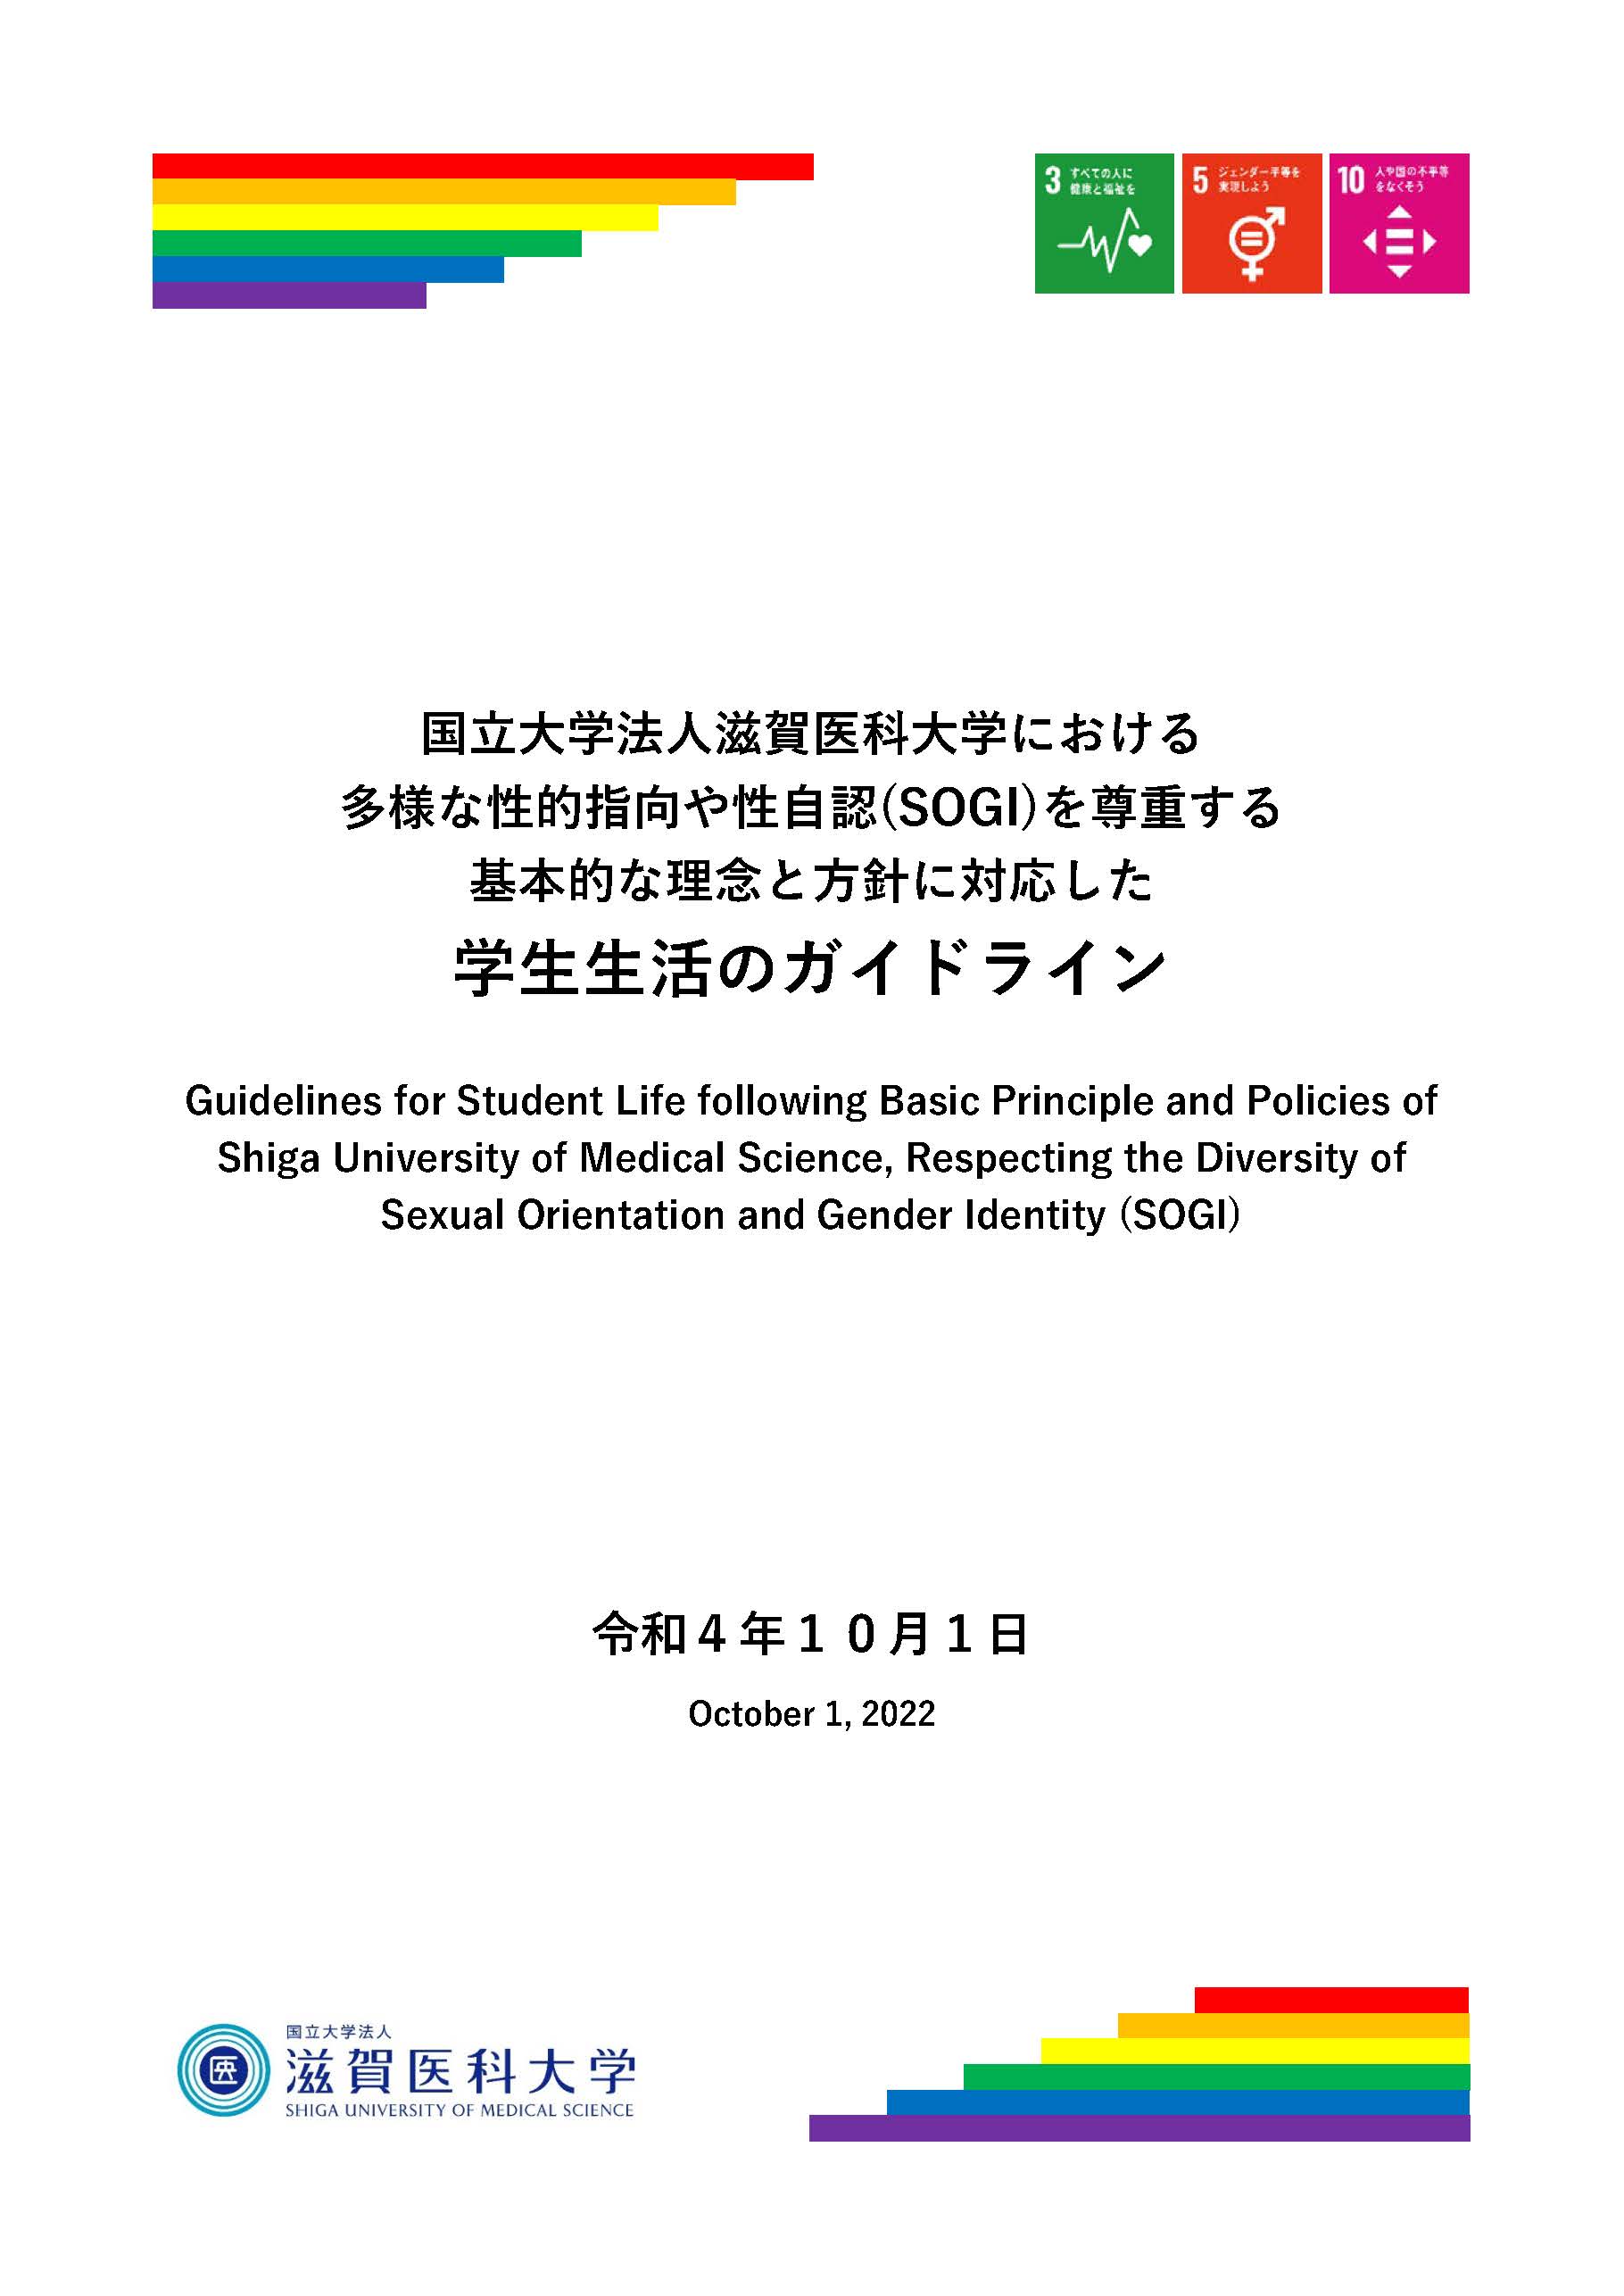 国立大学法人滋賀医科大学における多様な性的指向や性自認（SOGI）を尊重する基本的な理念と方針に対応した学生生活のガイドライン